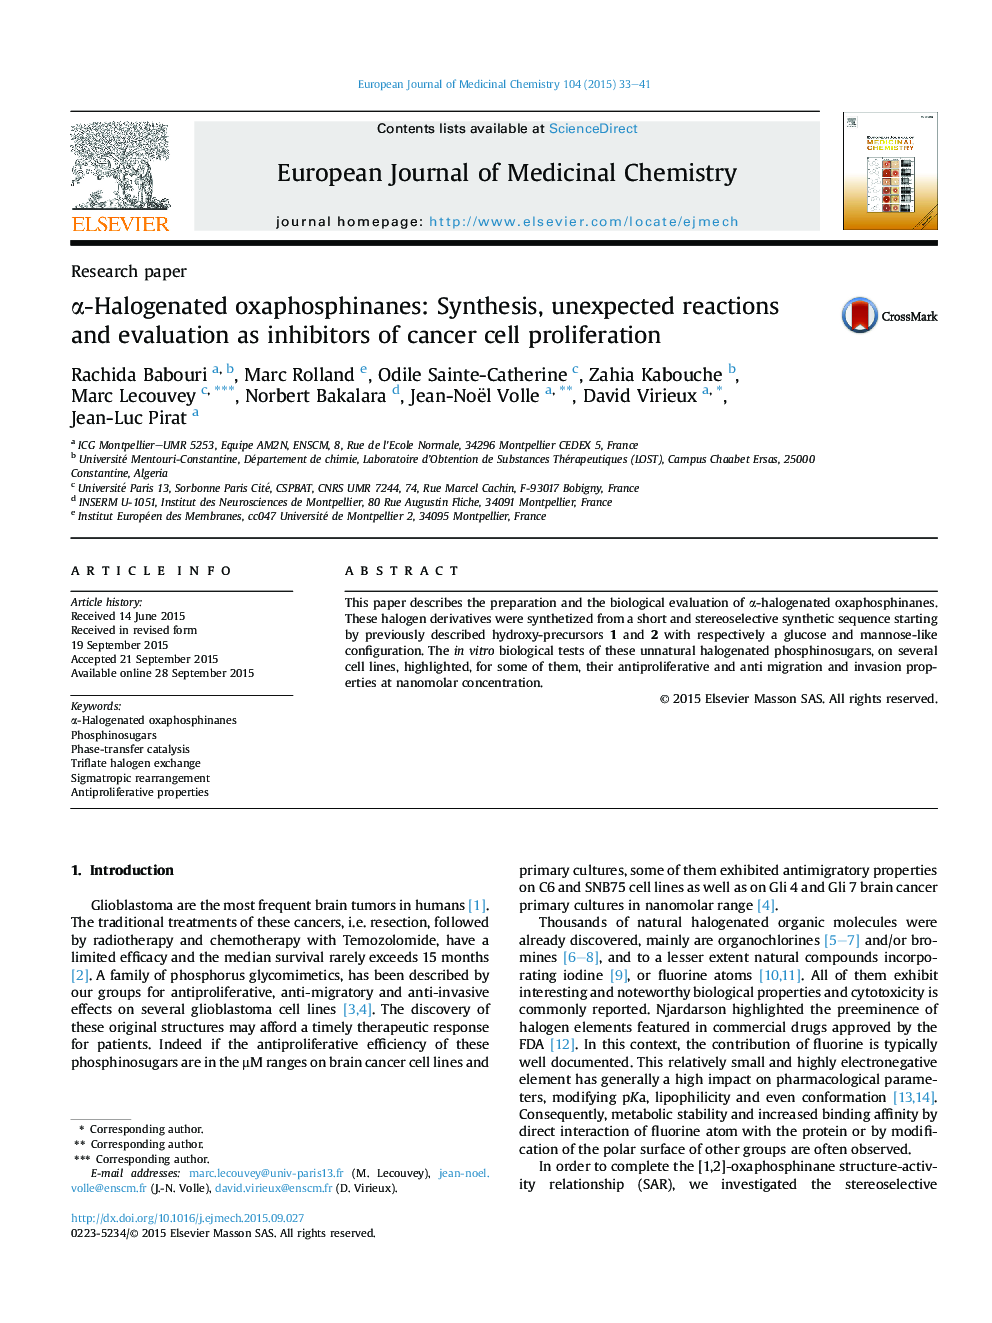 α-Halogenated oxaphosphinanes: Synthesis, unexpected reactions and evaluation as inhibitors of cancer cell proliferation